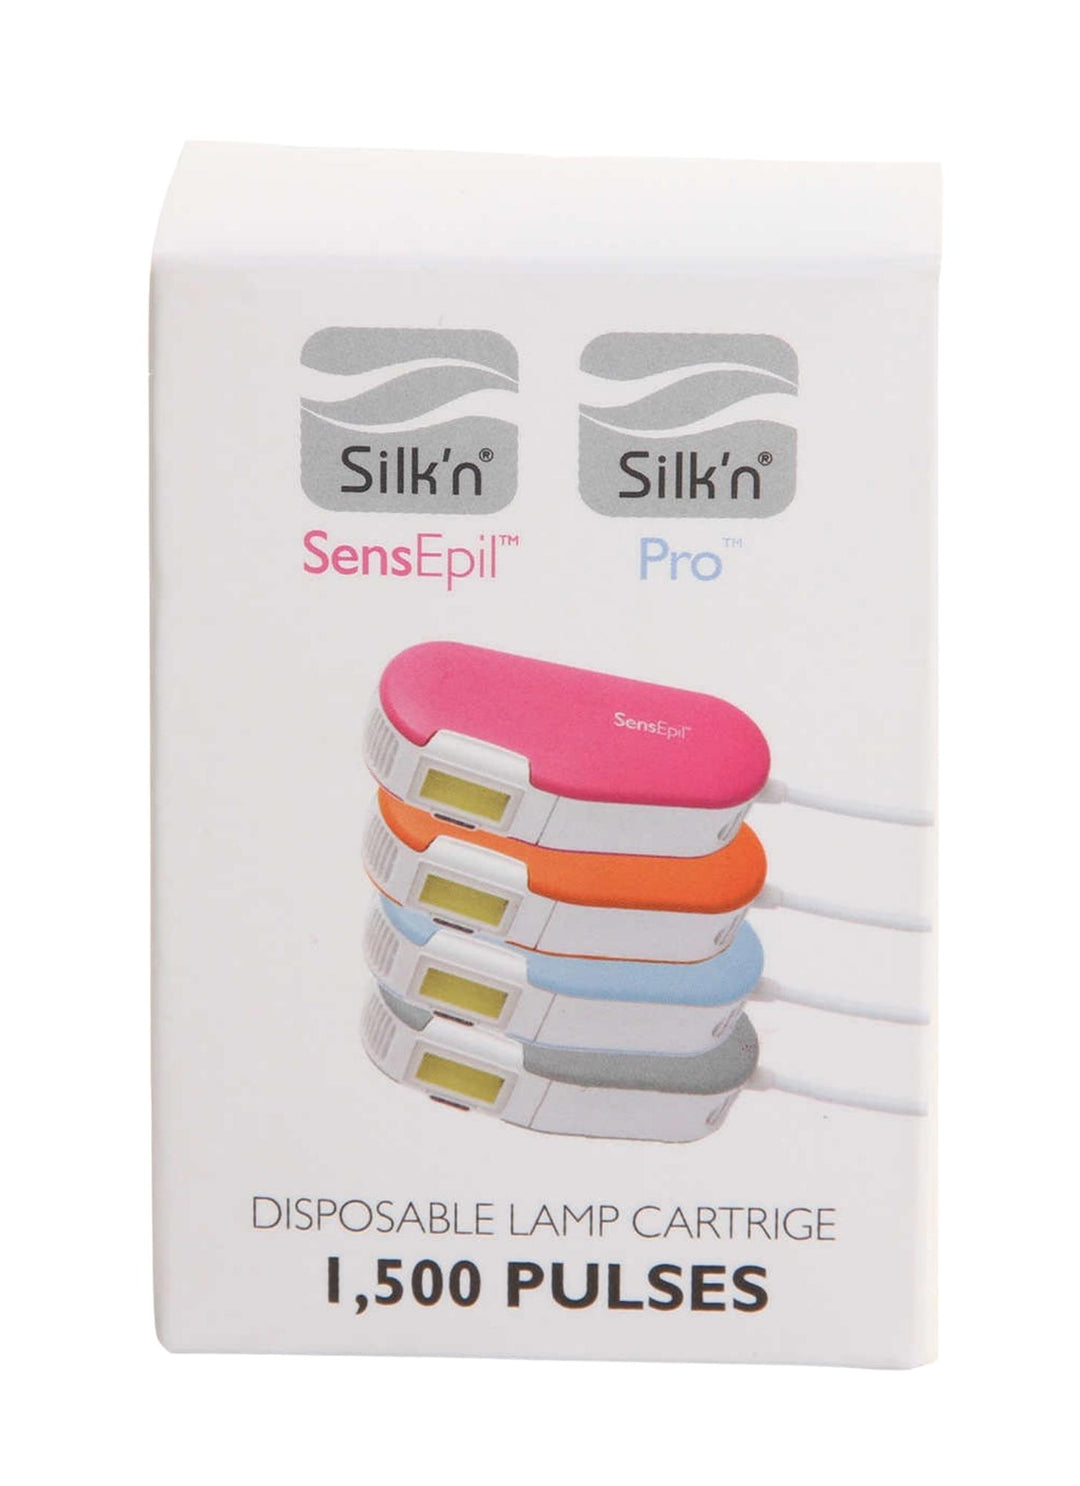 Silk'n BellaLite and SensEpil Replacement Cartridge - 3-Pack